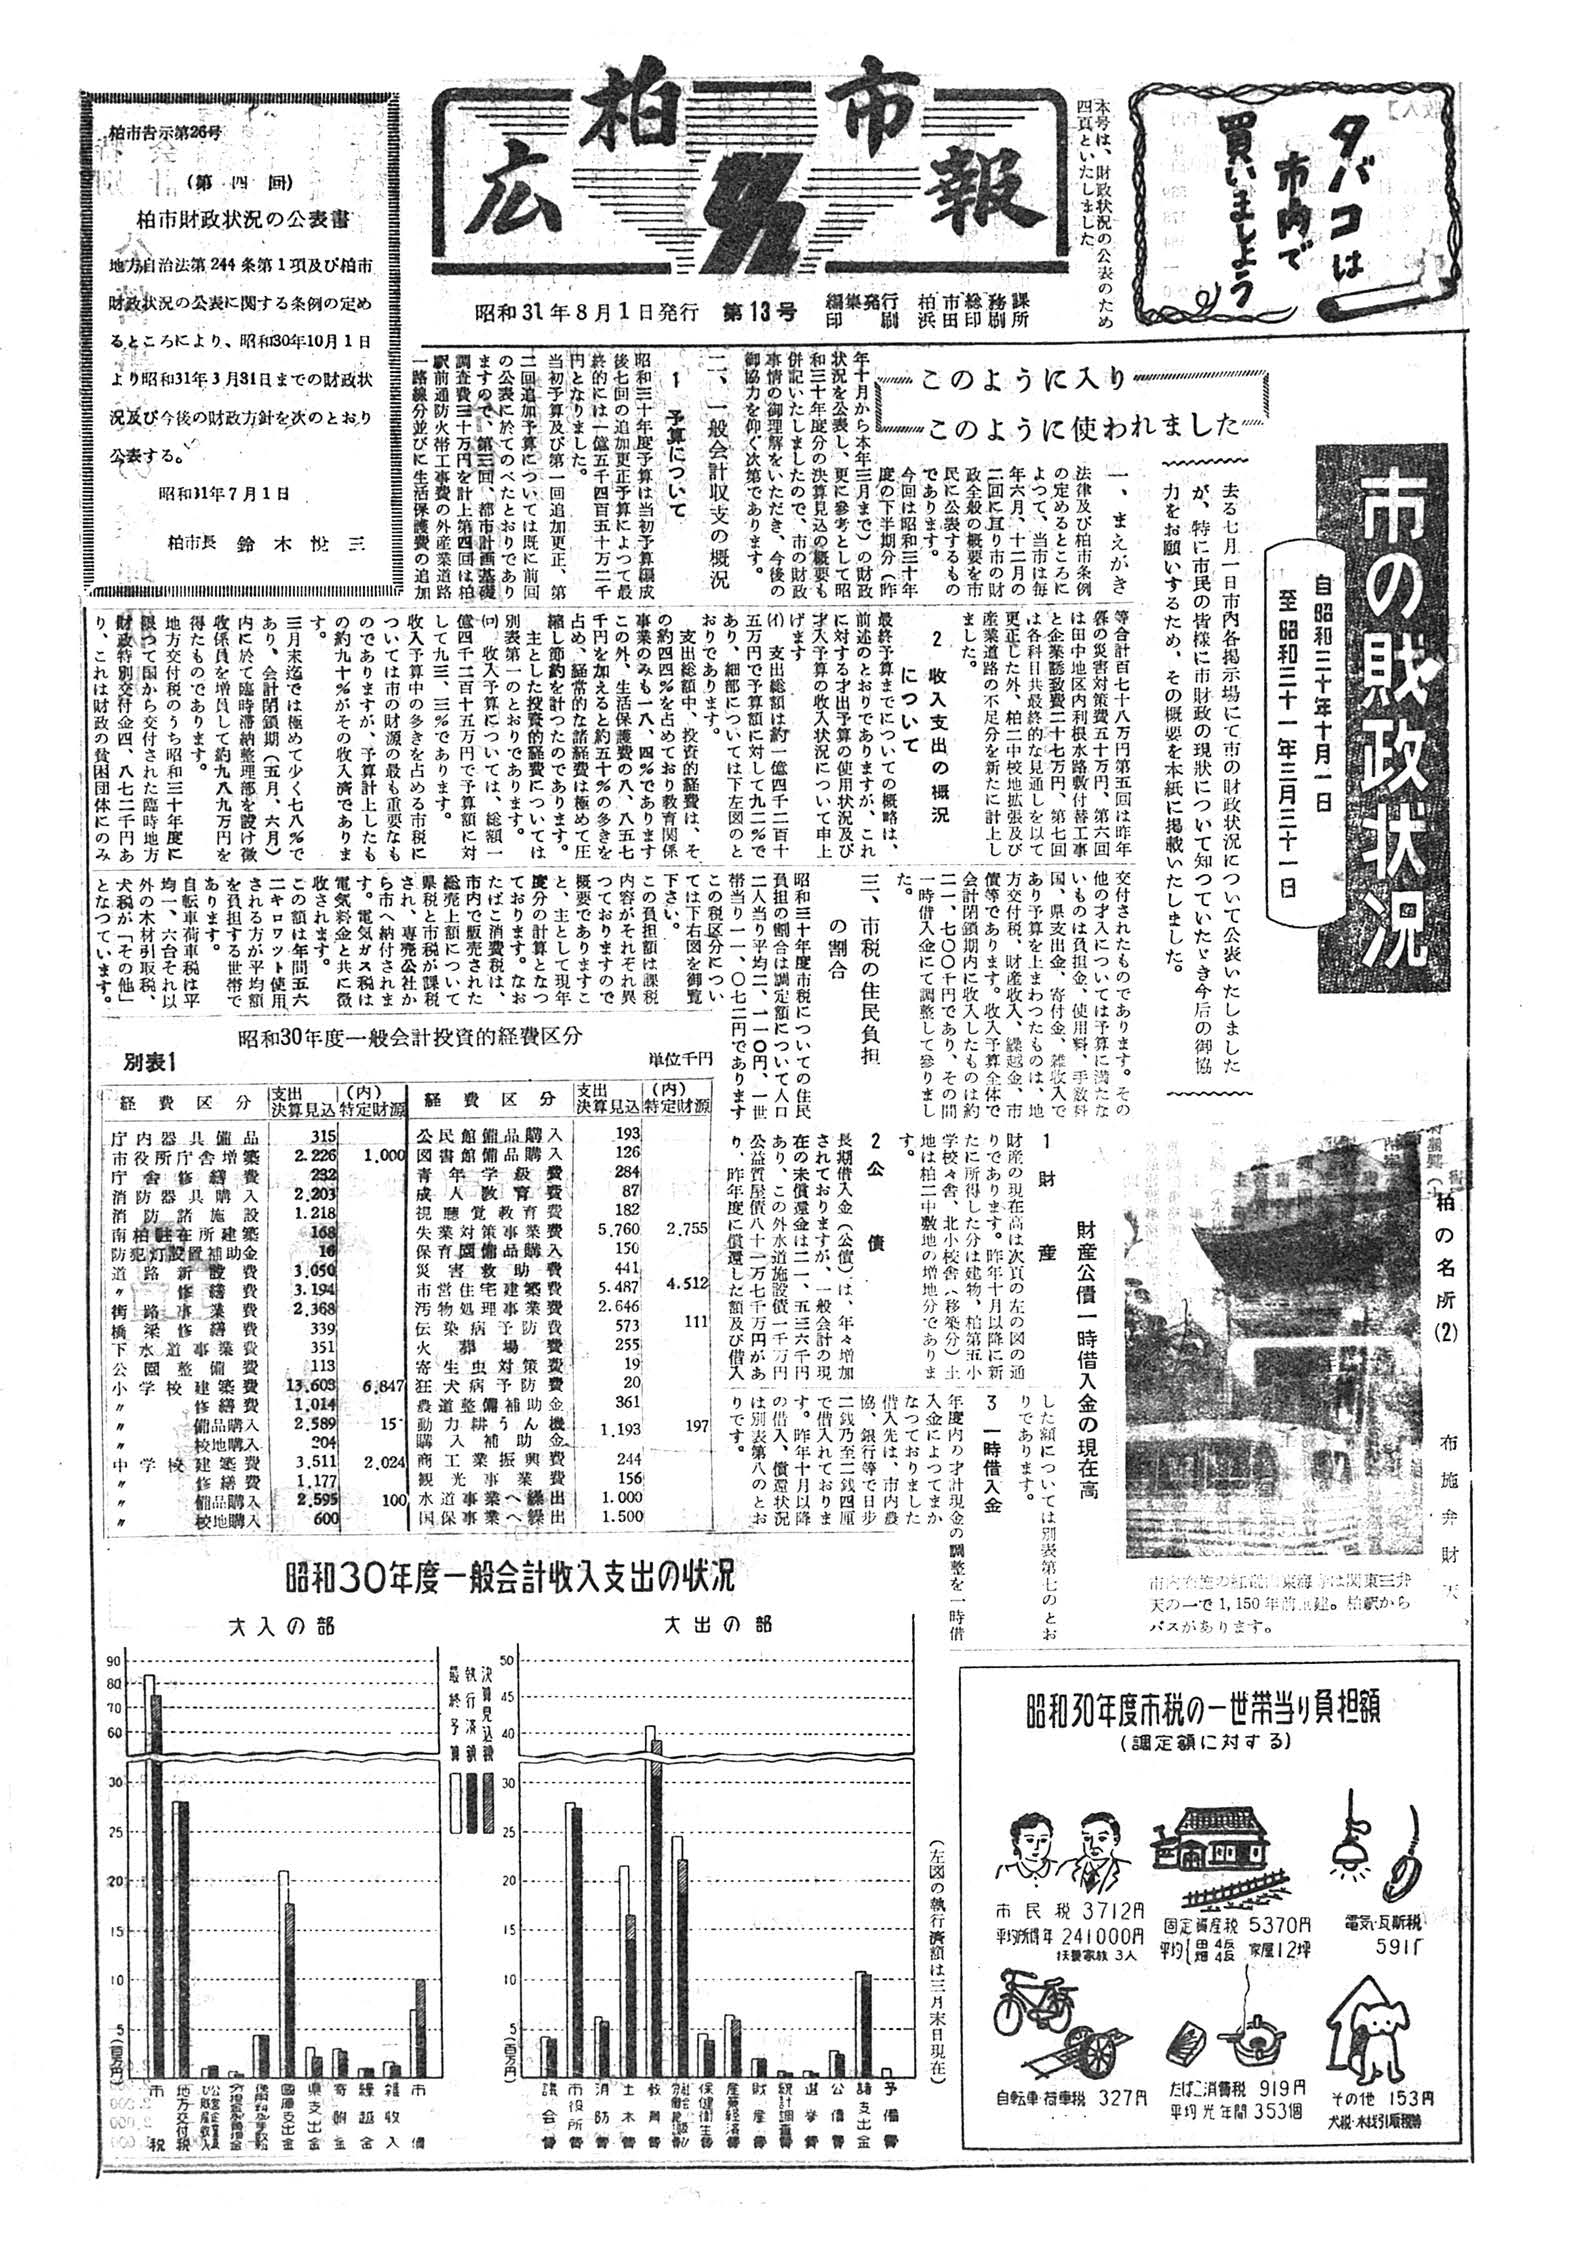 広報かしわ　昭和31年8月1日発行　13号